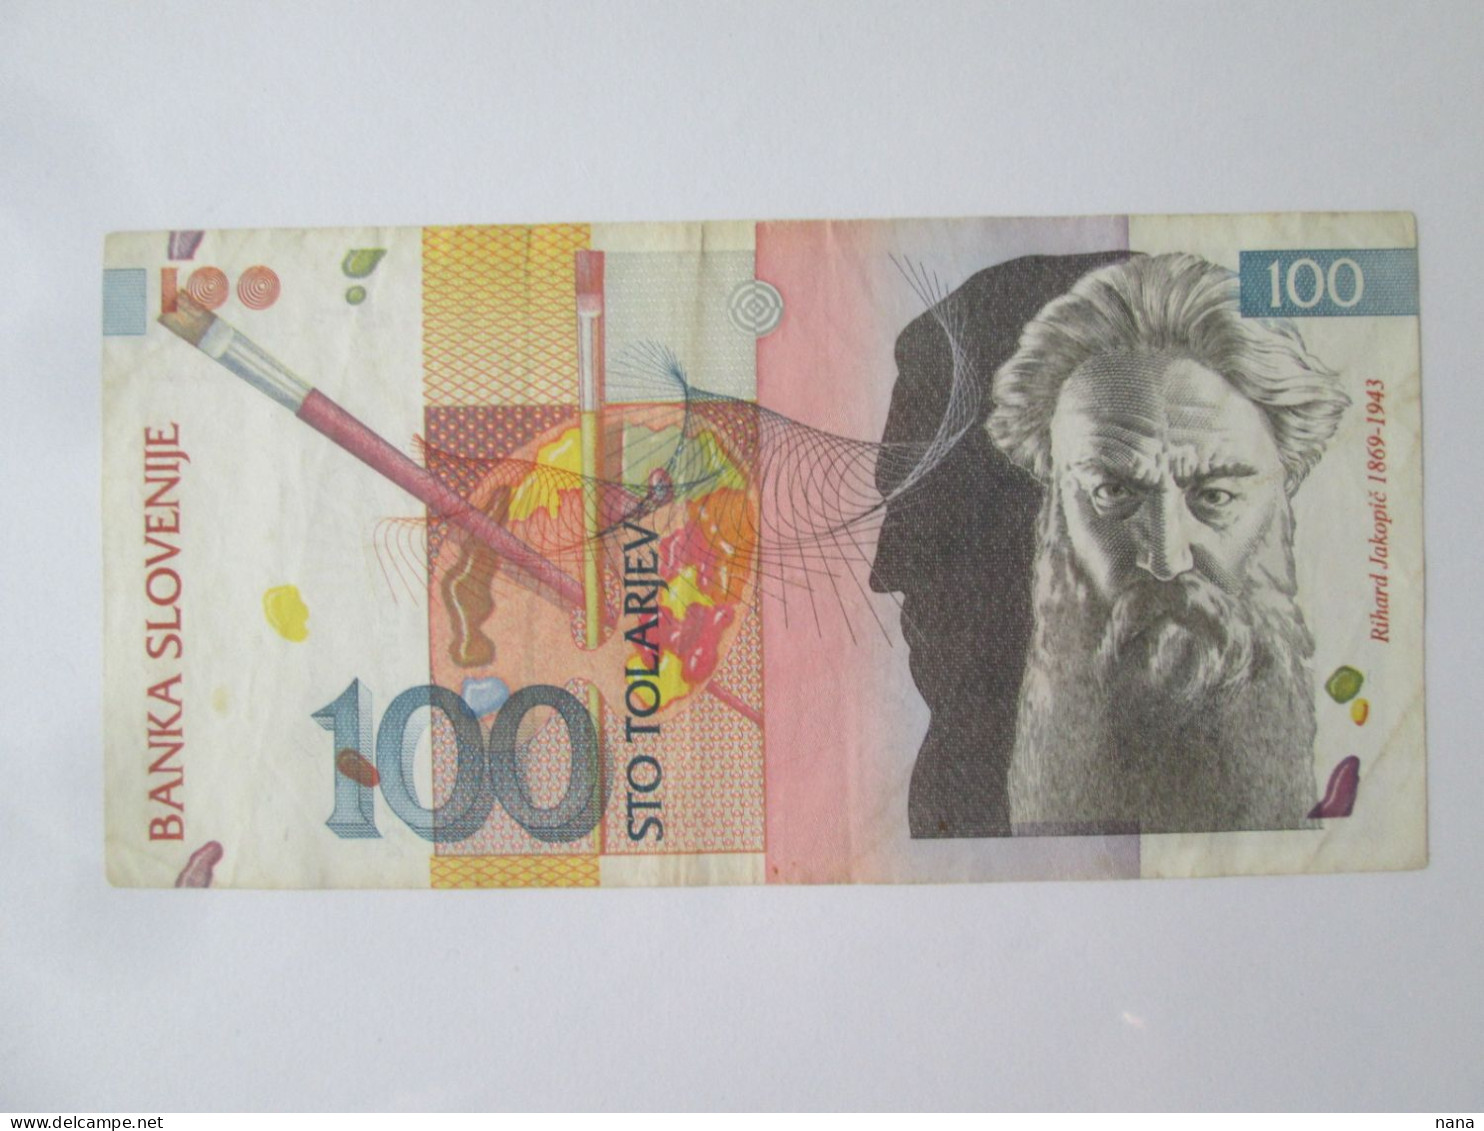 Slovenia 100 Tolarjev 1992 Banknote See Pictures - Slovenia